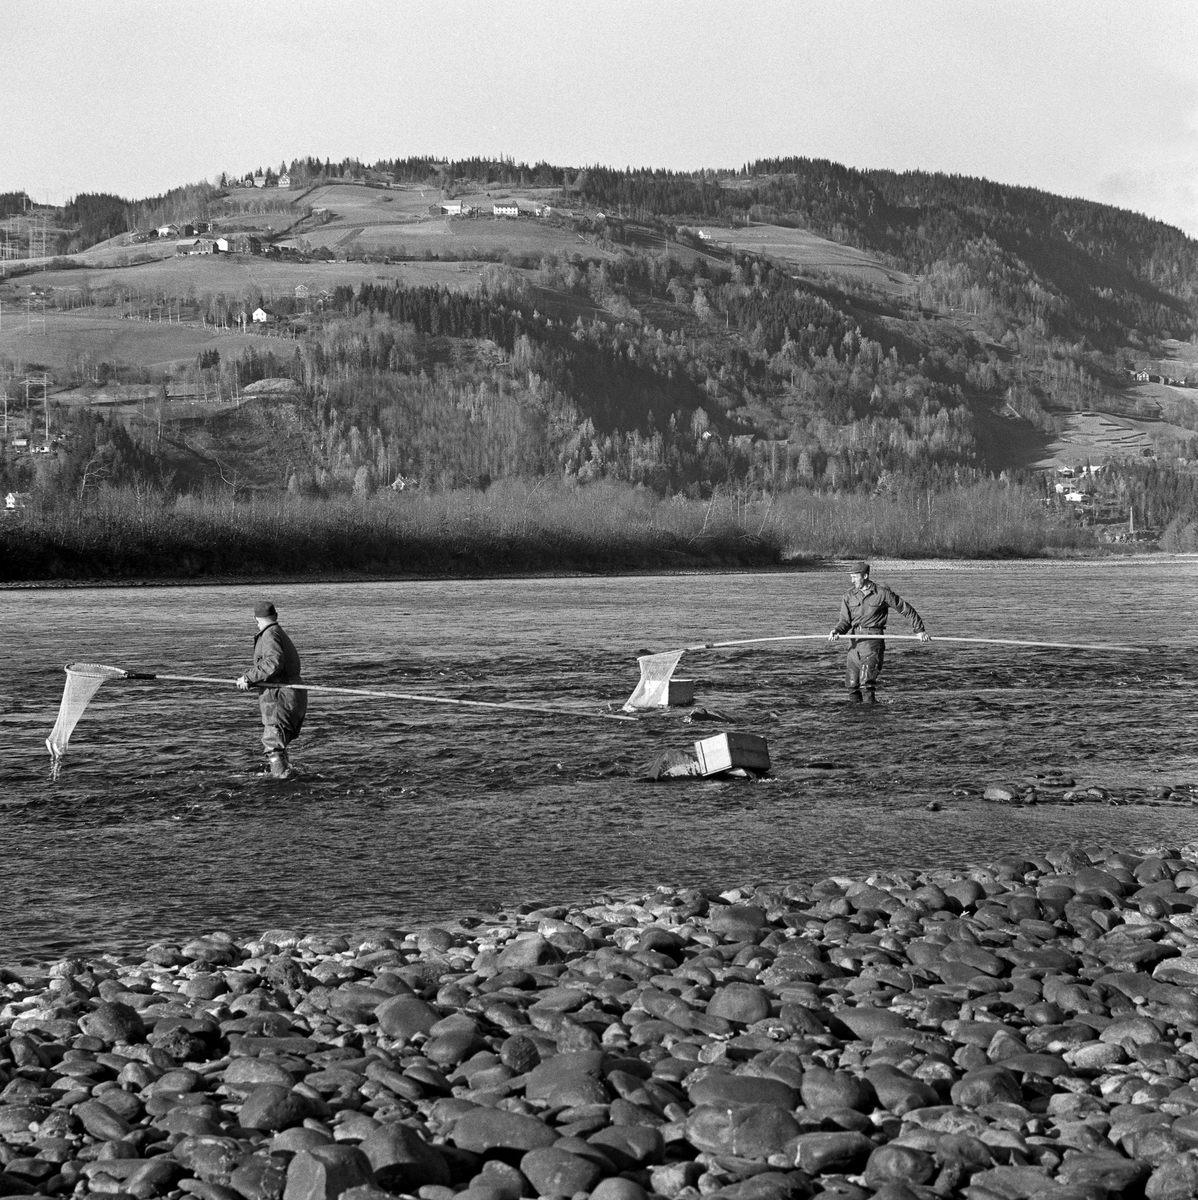 Grunnhåvfiske etter lågåsild (Coregonus albula) ved Øyra i Fåberg, altså i den nedre delen av Gudbrandsdalslågen.  Fotografiet ble tatt i 1962.  Det viser to fiskere i aksjon med grunnhåver og trekasser, som ble brukt til midlertidig oppbevaring av fangsten.  Grunnhåven er et enmannsredskap, beregnet på fangst av lågåsild fra elvebredden.  Den besto av et treskaft - ei «raun» - som kunne være fire til seks meter lang, og et «håvhuggu» med en finmasket fangtspose av bomullsgarn.  Håvhugguet var ovalt.  Håven ble ført ned i vannet på motstrøms side og ført med vannmassene langs botnen, litt hurtigere enn strømhastigheten, slik at fangstposen sto utspent på oversida av håvhugguet.  Når håven var kommet så langt nedover at fiskeren ikke nådde lengre, vred han rauna, så åpningen til «påsa'n» vendte oppover, slik at eventuell fangst ikke fikk sjansen til å unnslippe.  Var det lågåsild i håven, holdt fiskeren håvhugguet over en snik eller ei bøtte samtidig som han løftet ytterenden av fangsposen opp i lufta, slik at fisken falt ned i transportbeholderen.